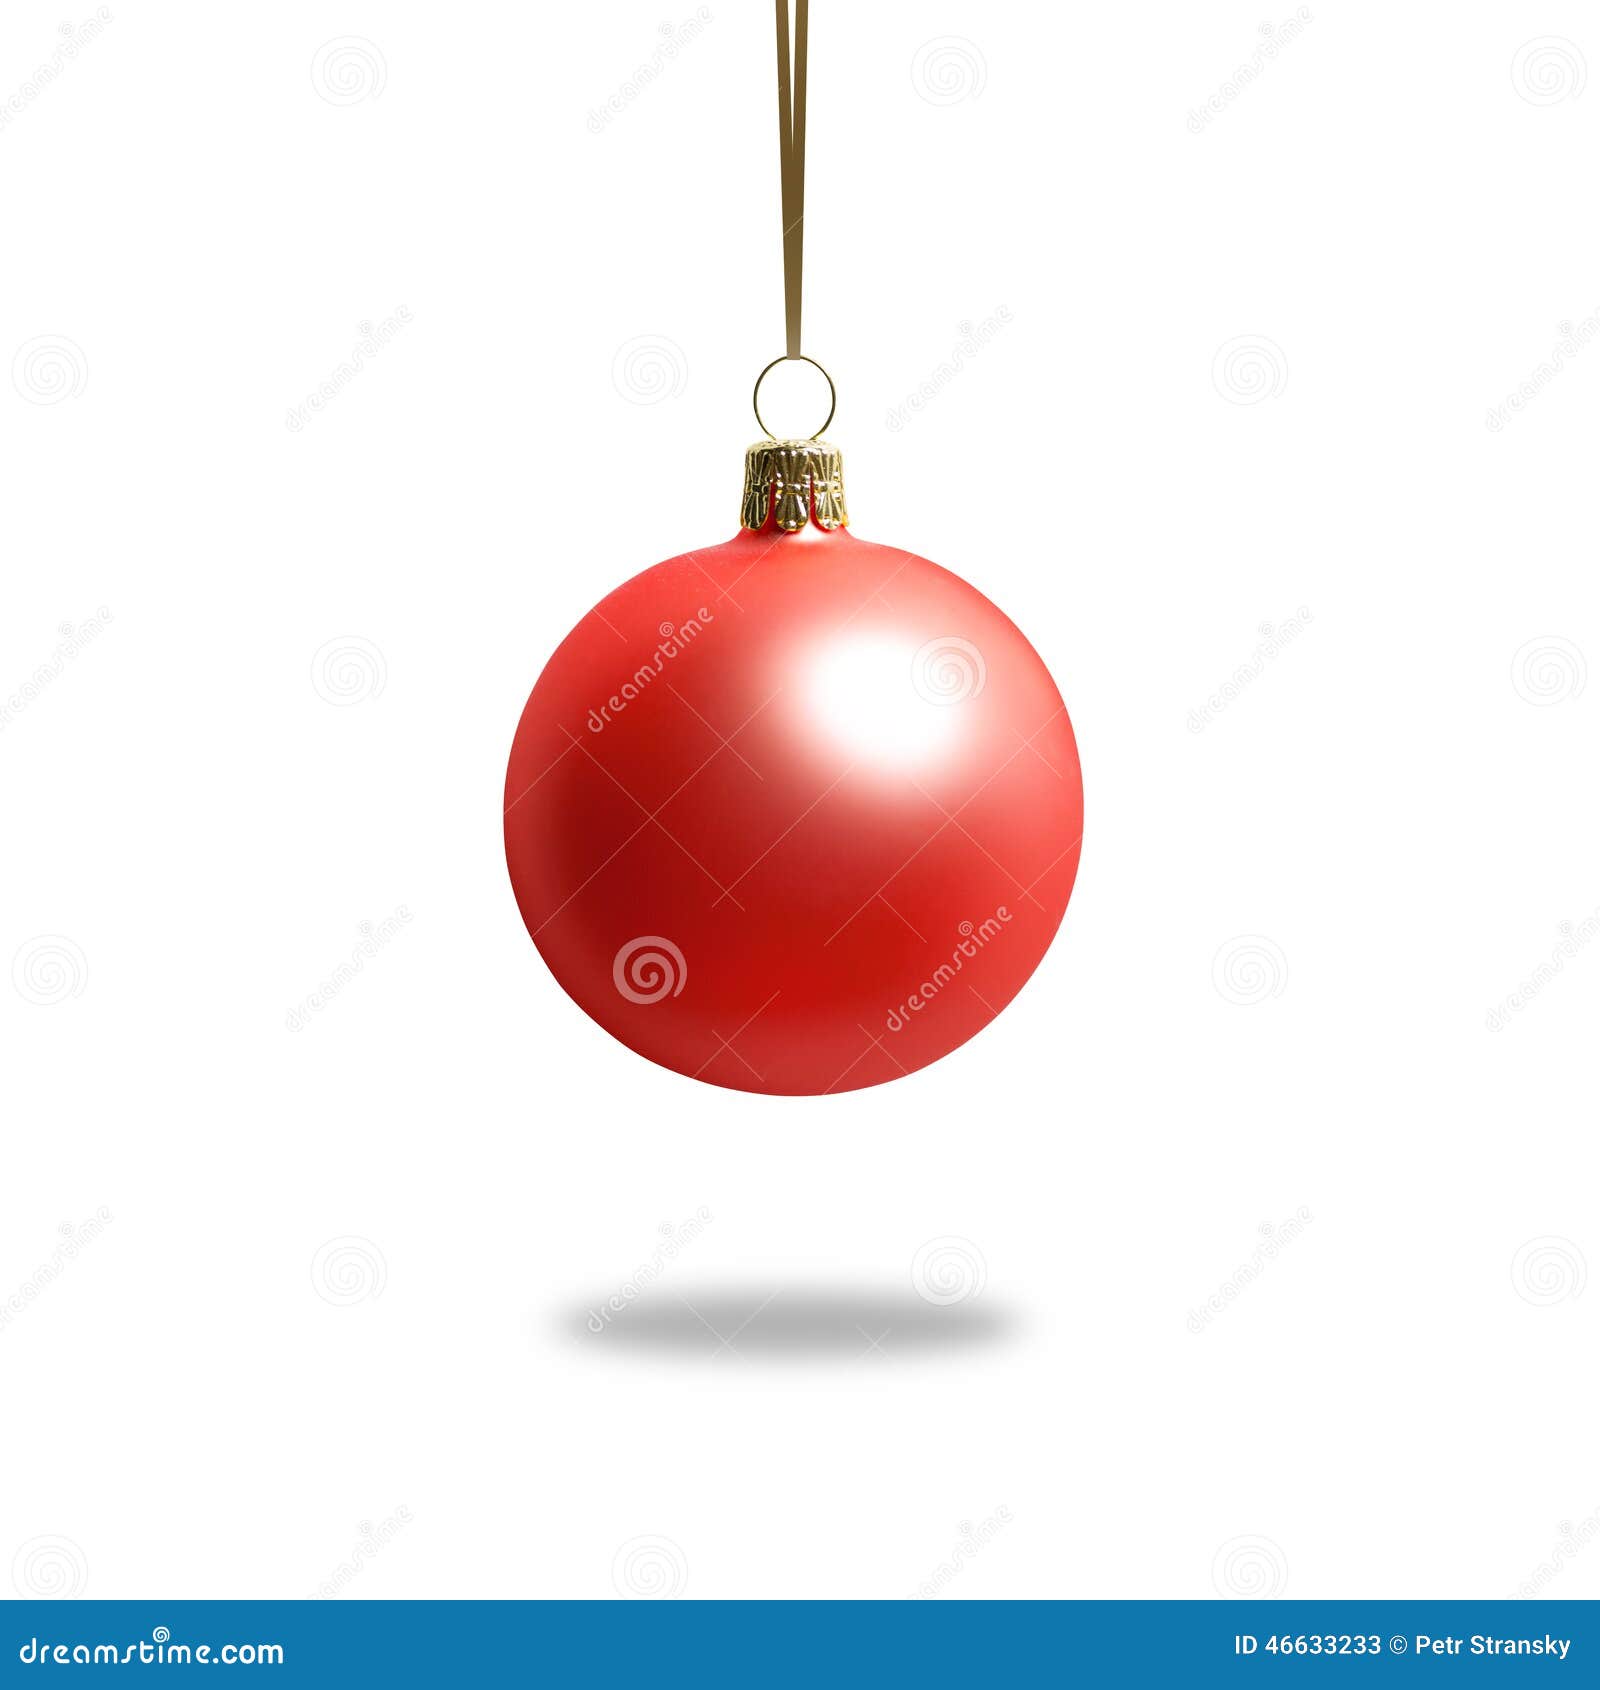 COOLWEST Lote de 24 Bolas de Navidad combinadas para Colgantes Navidad Adornos /árbol de Fiesta decoraci/ón de Navidad Azul